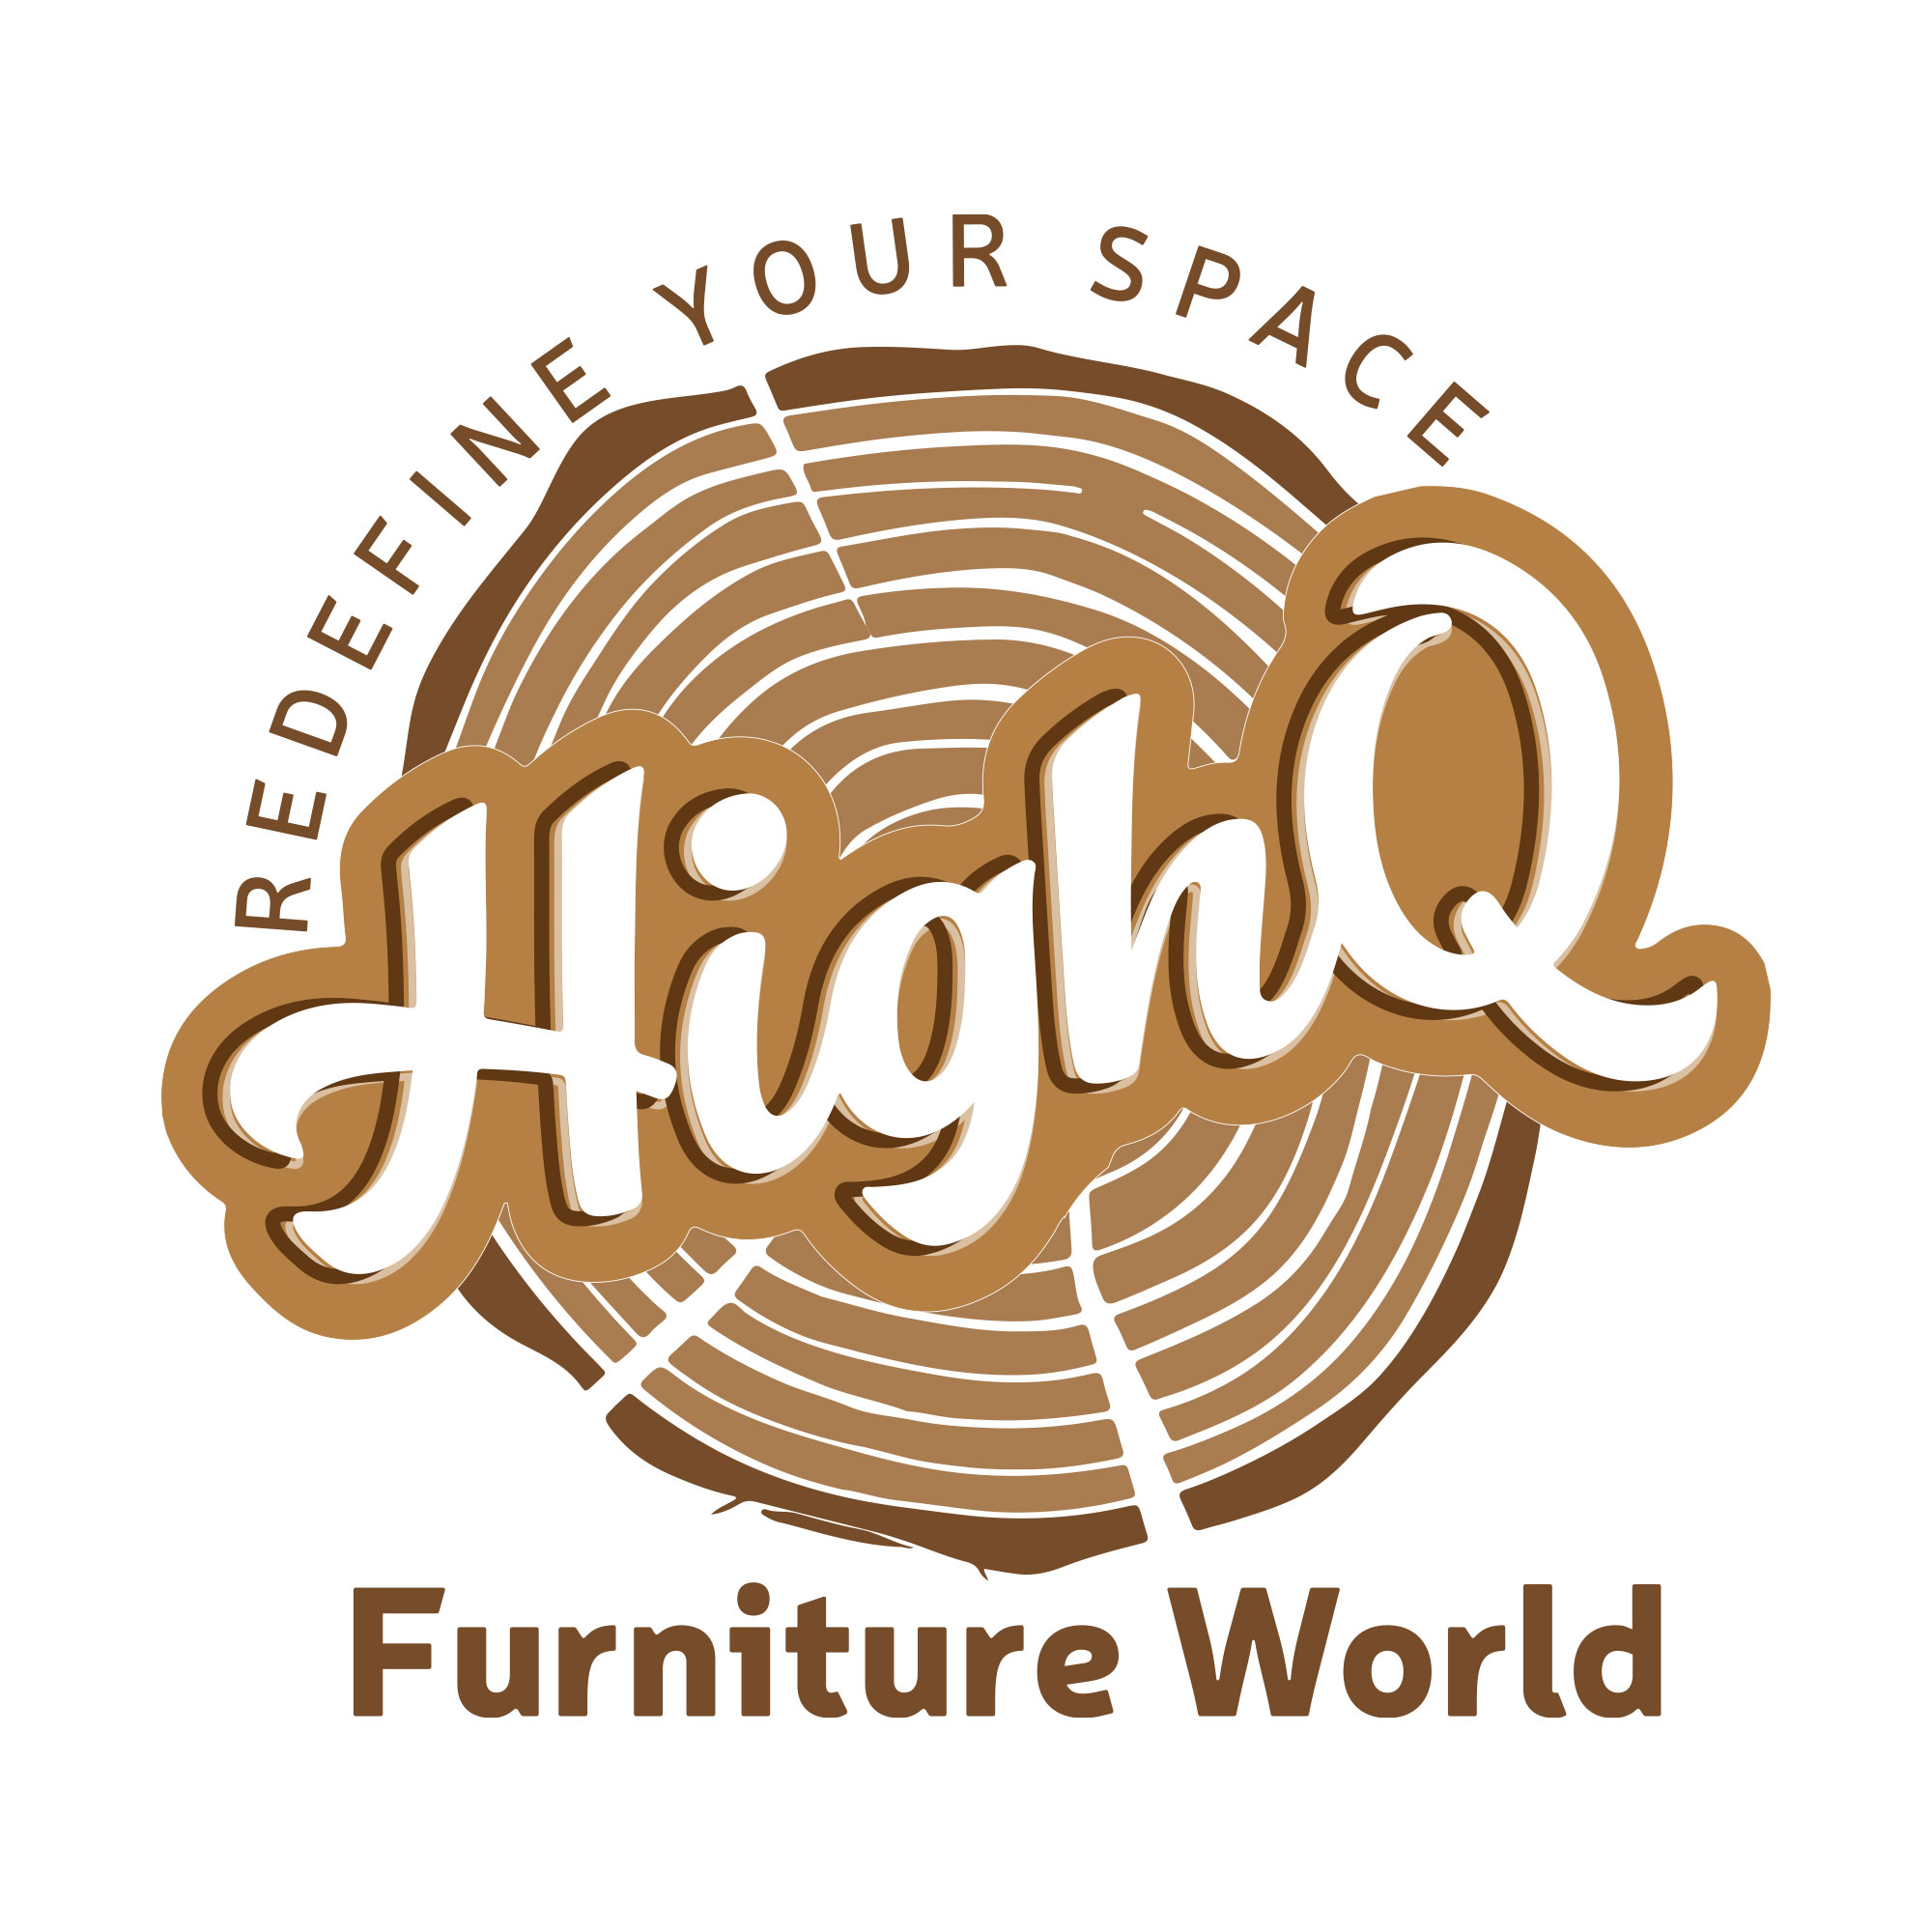 Branding for furniture shop